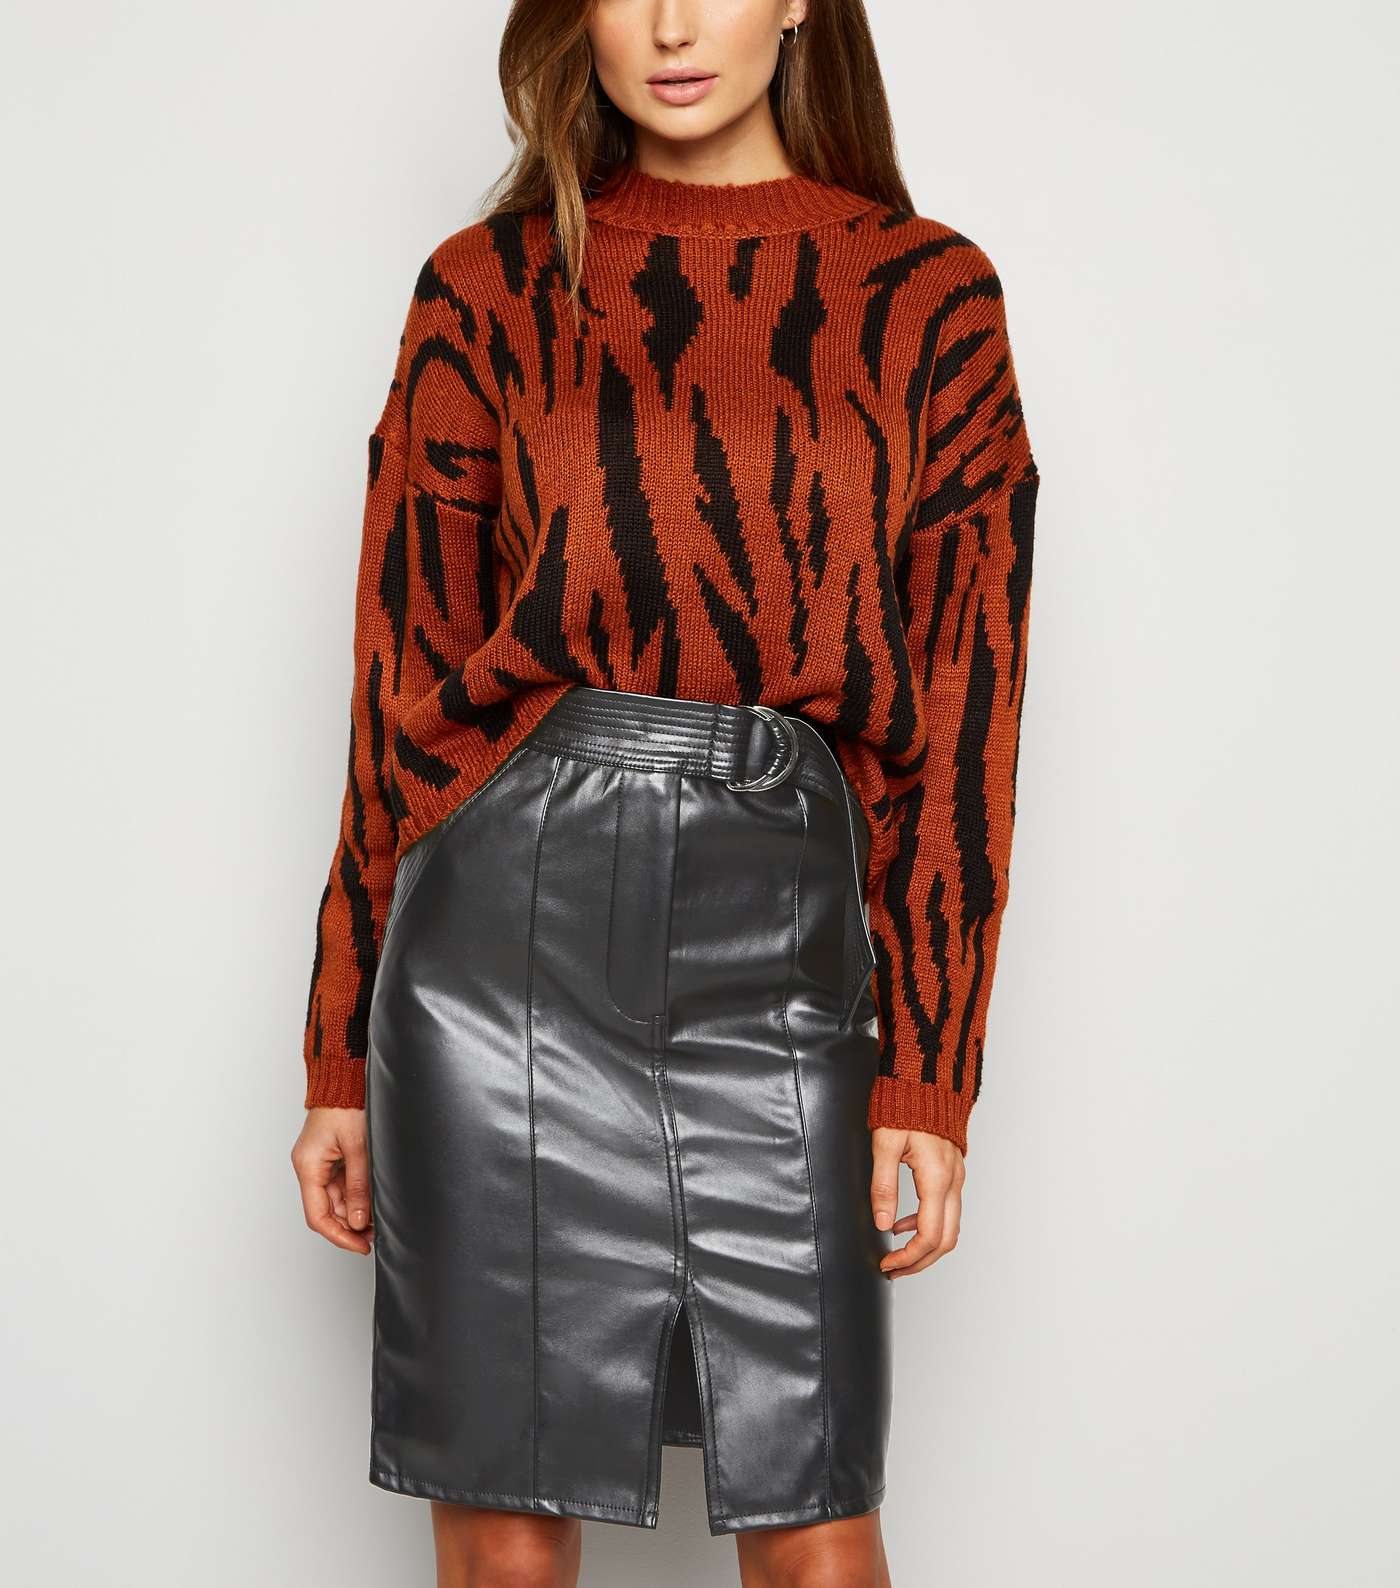 Urban Bliss Black Leather-Look Midi Skirt Image 2